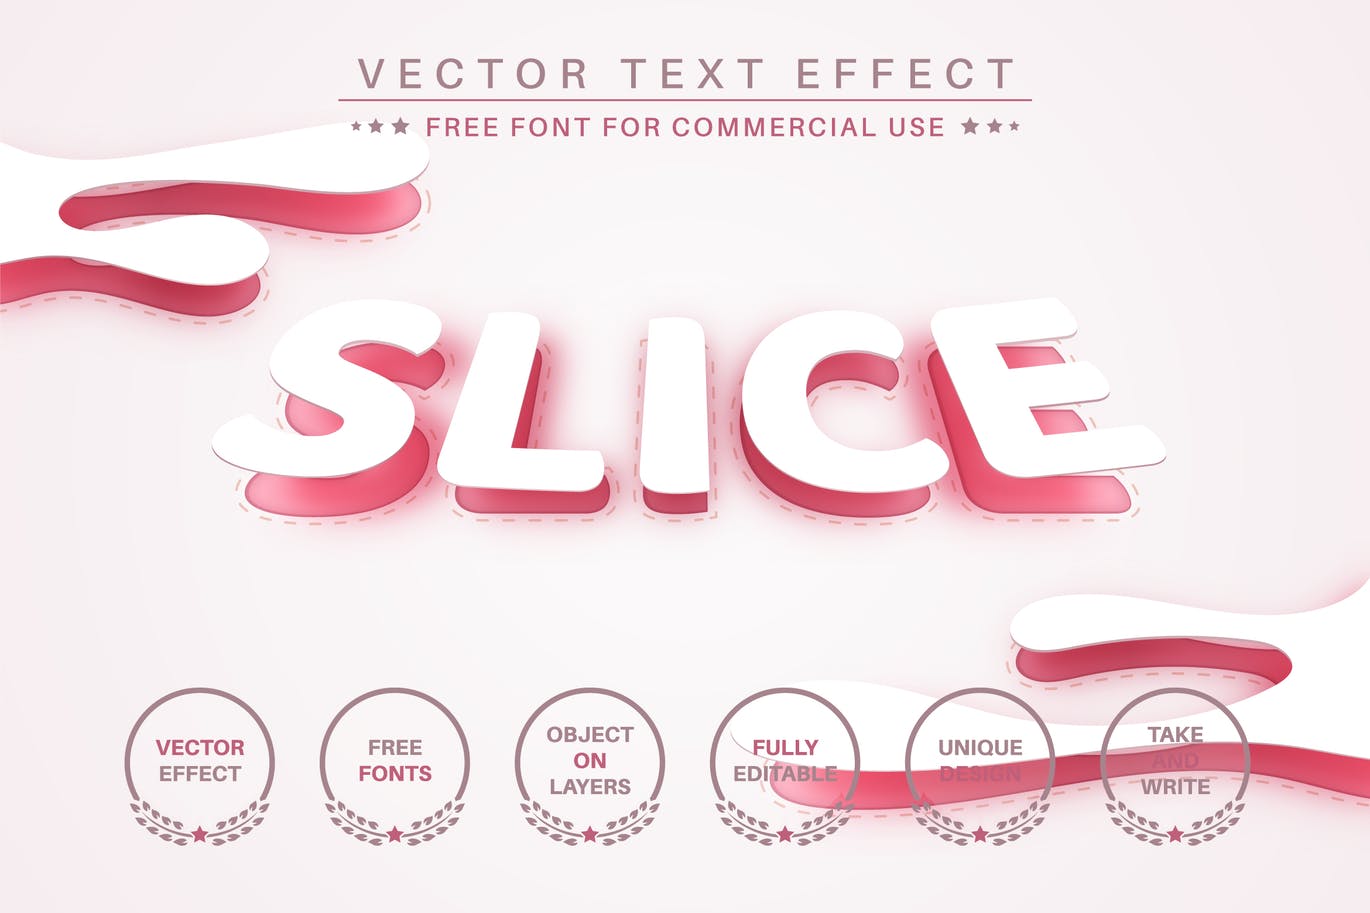 切片弧形矢量文字效果字体样式 Slice Arc – Editable Text Effect, Font Style 插件预设 第1张